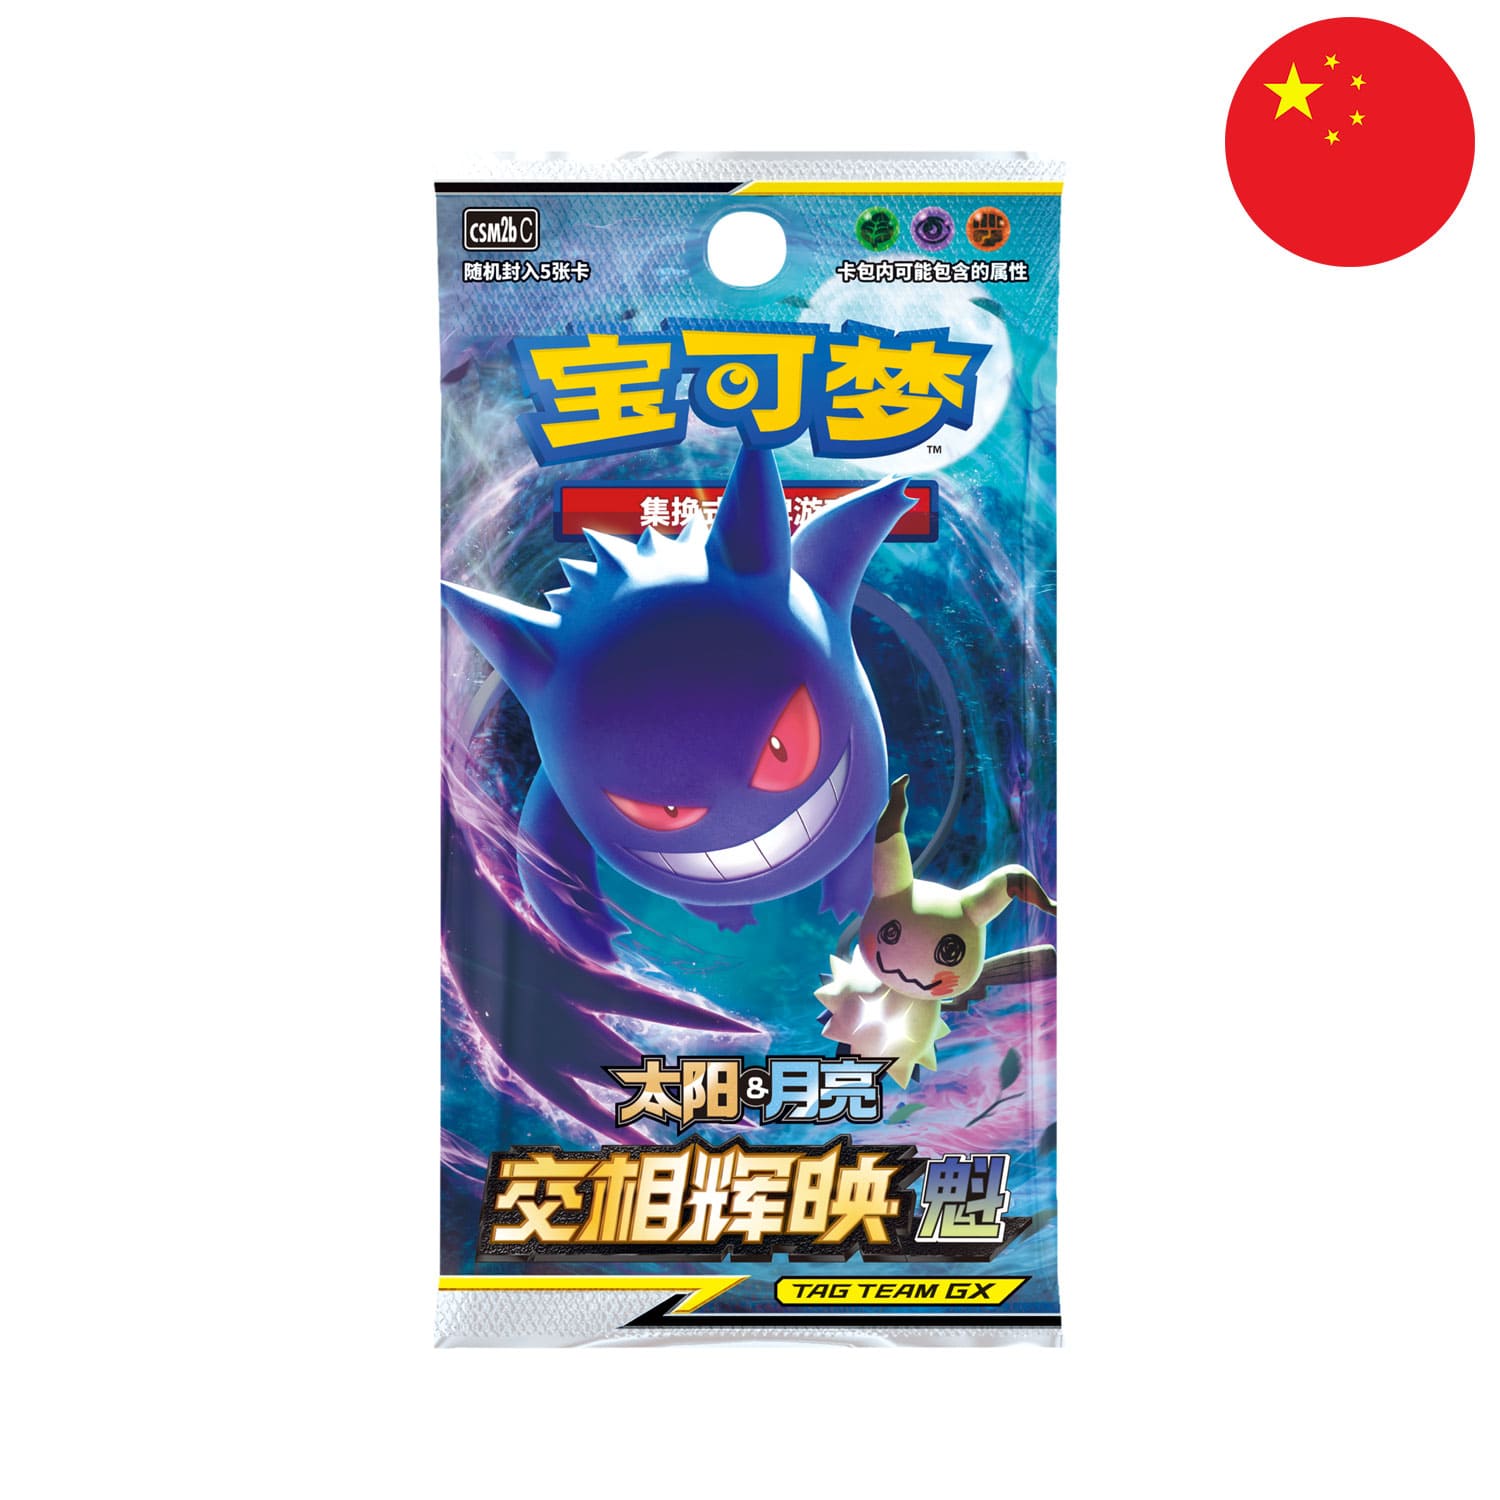 Das Pokemon Boosterpack Shining Synergy: Supreme (CSM2b),als Scan mit Genger & Mimigma, mit der Flagge Chinas in der Ecke.